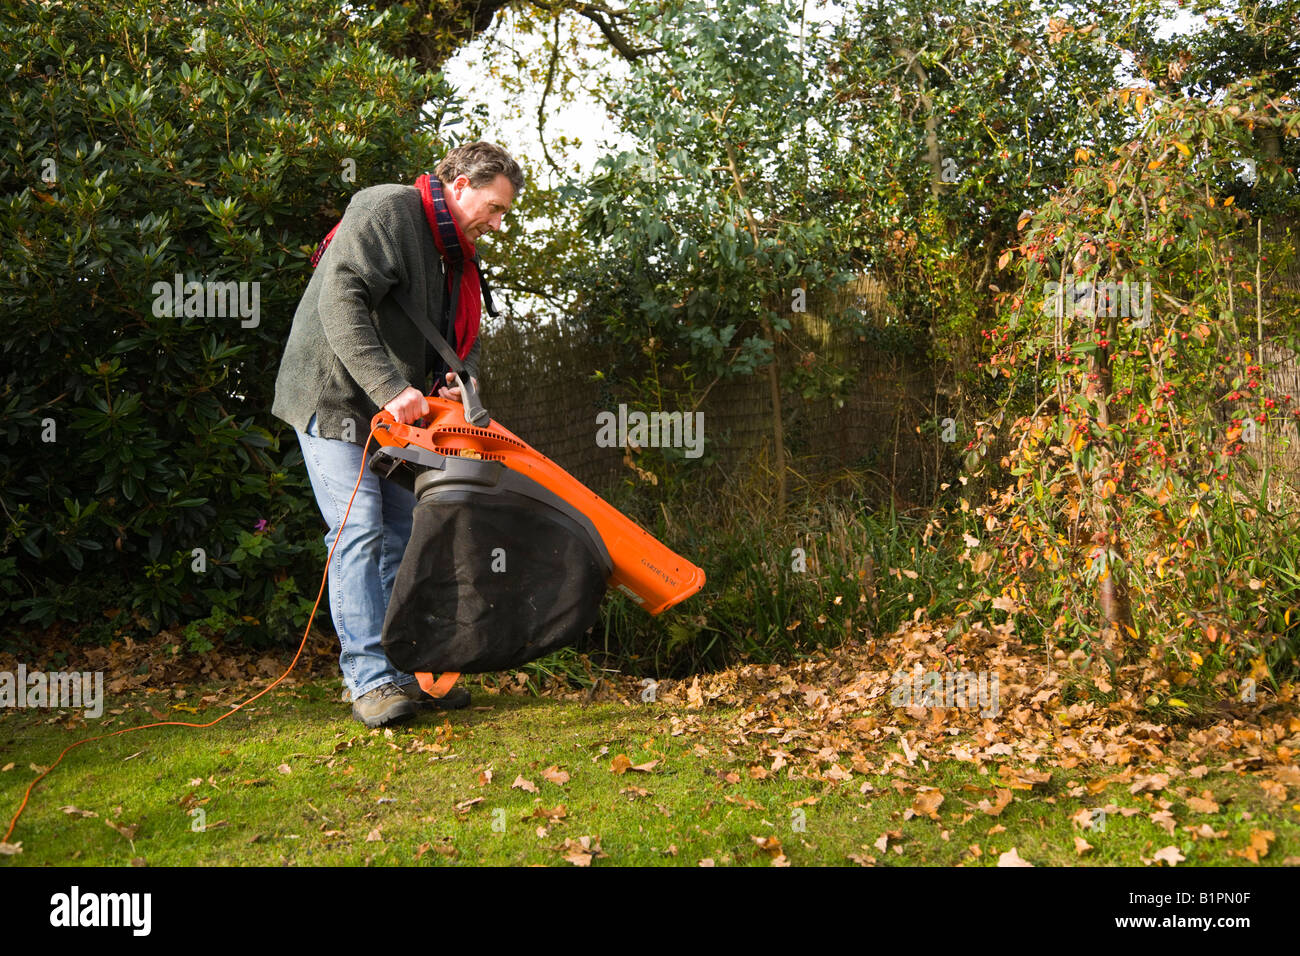 Soufflage des feuilles. L'homme à l'aide d'ACC et le jardin souffleuse à feuilles pour ranger les feuilles d'automne dans un jardin anglais. UK Banque D'Images